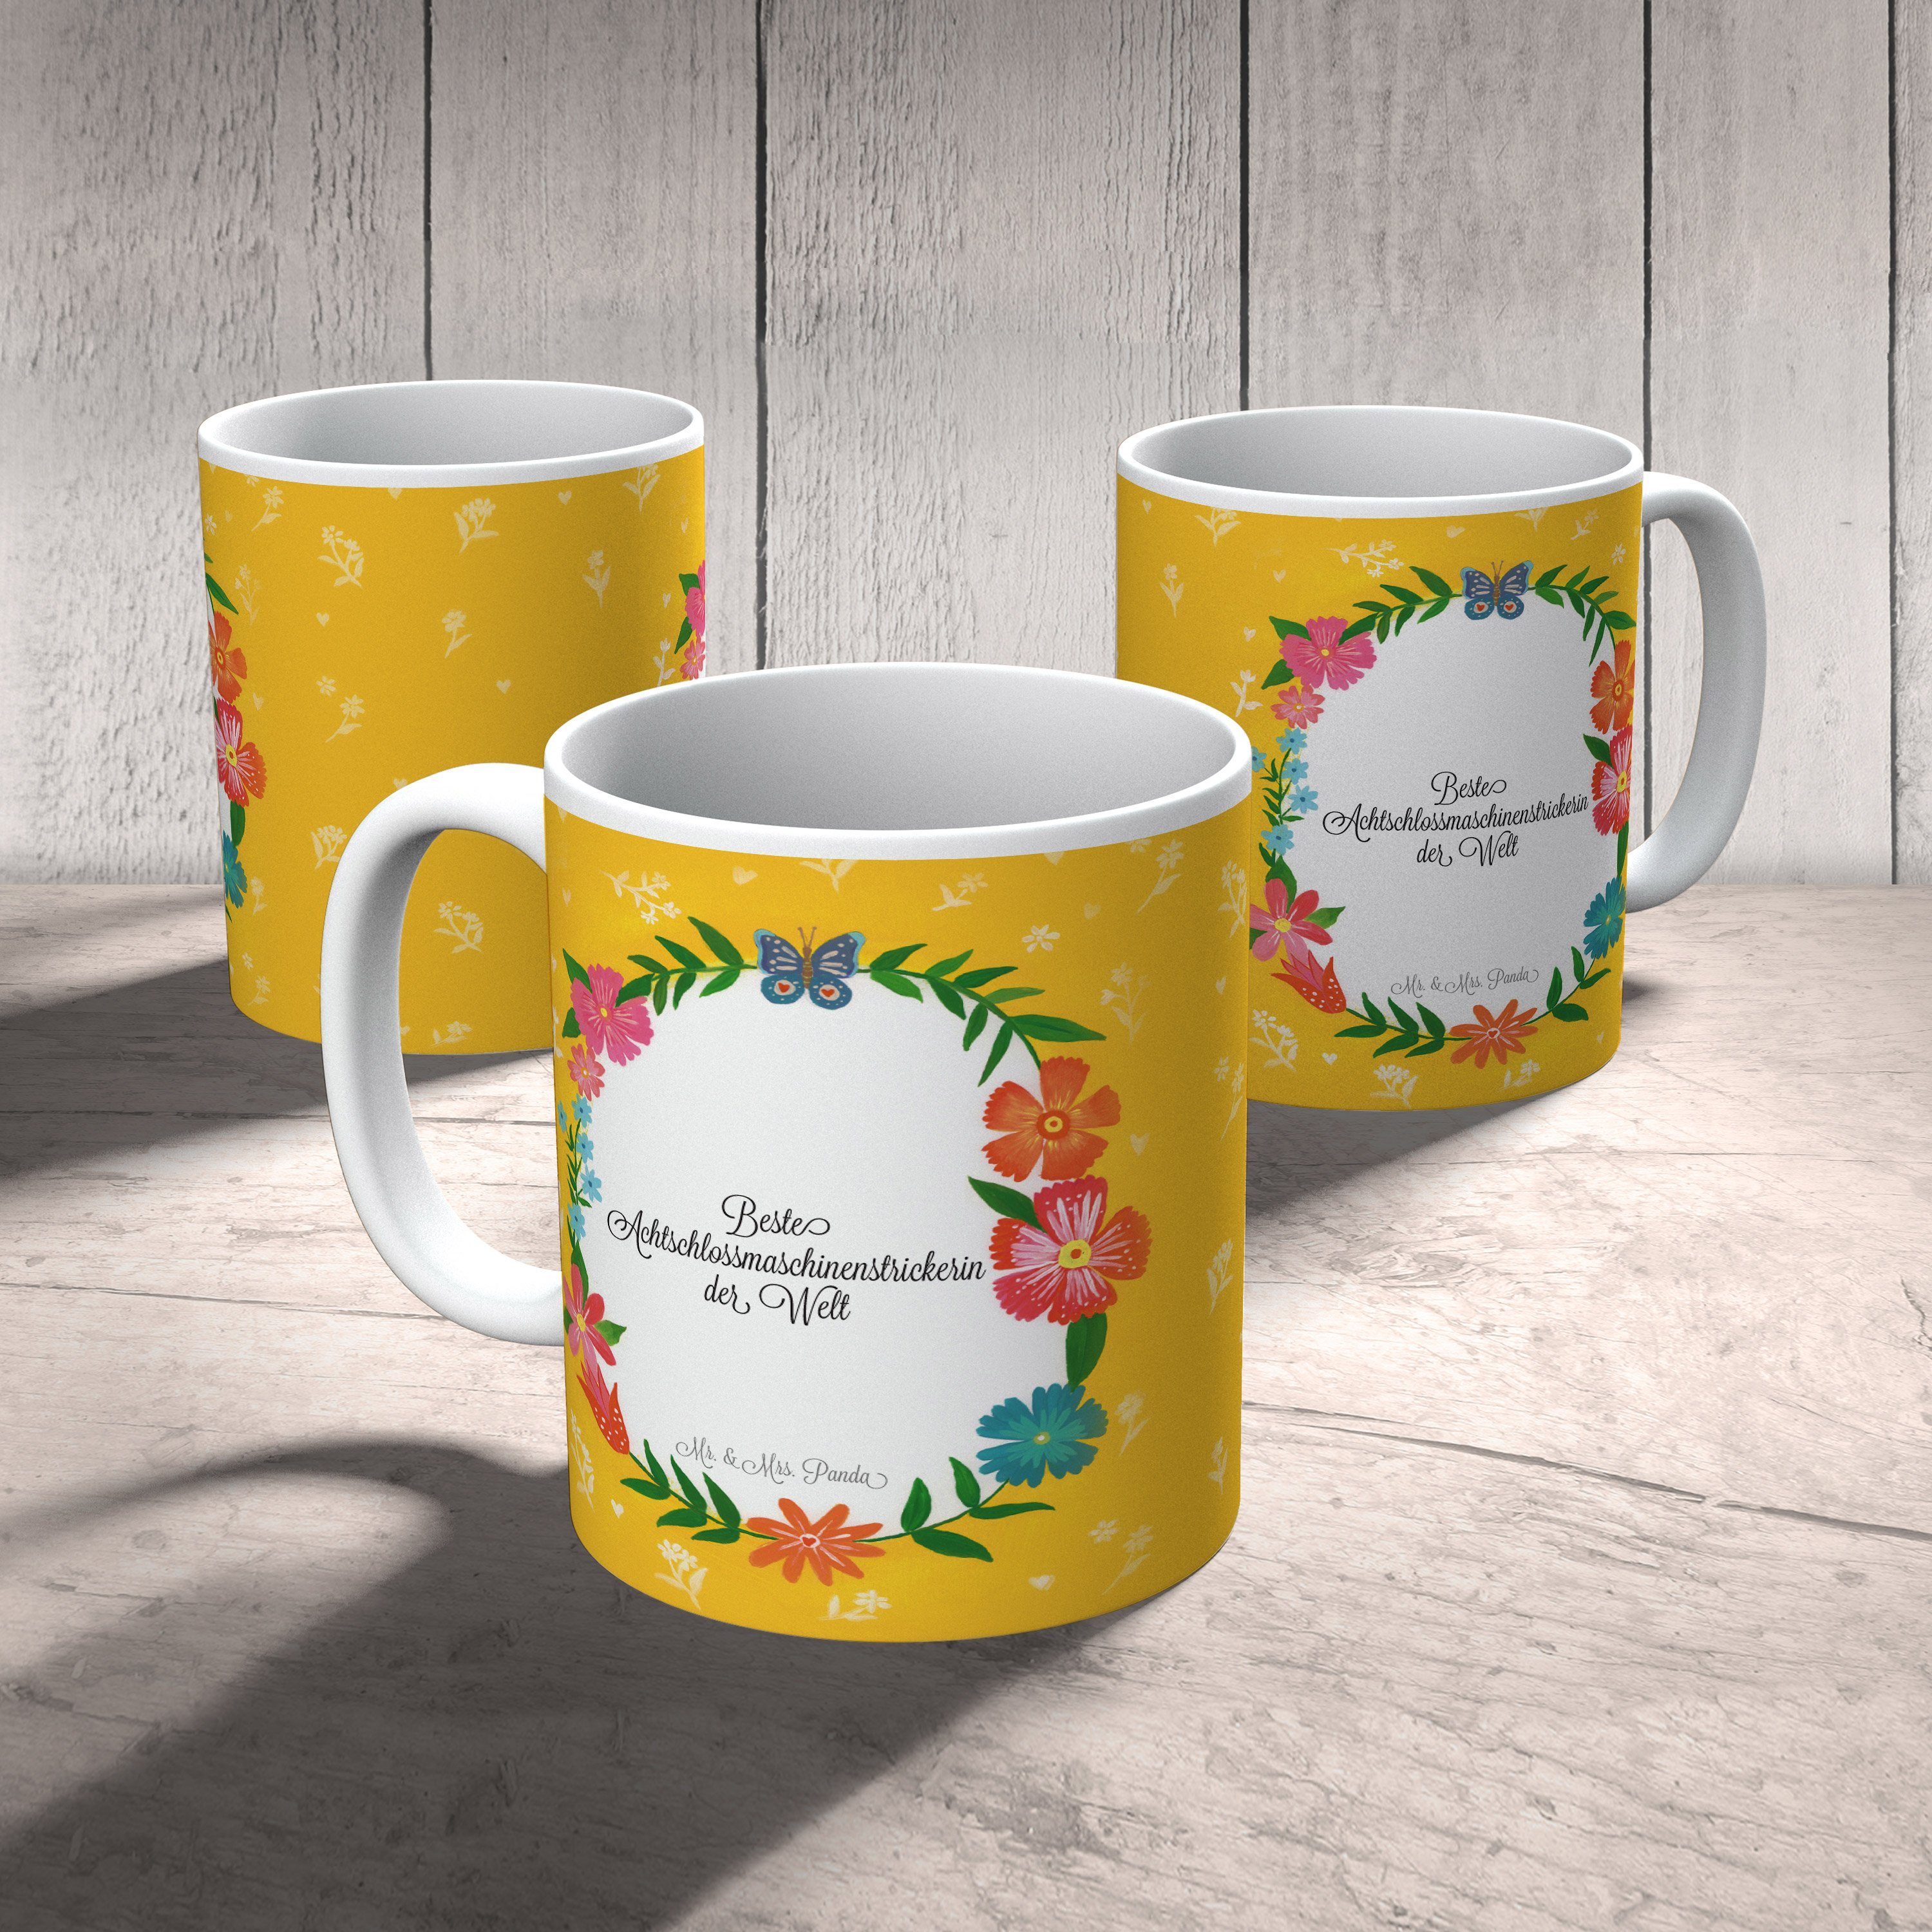 Tasse, Achtschlossmaschinenstrickerin - Gratulation, Panda Mrs. & Geschenk, Tasse Mr. Keramik Kaffee,